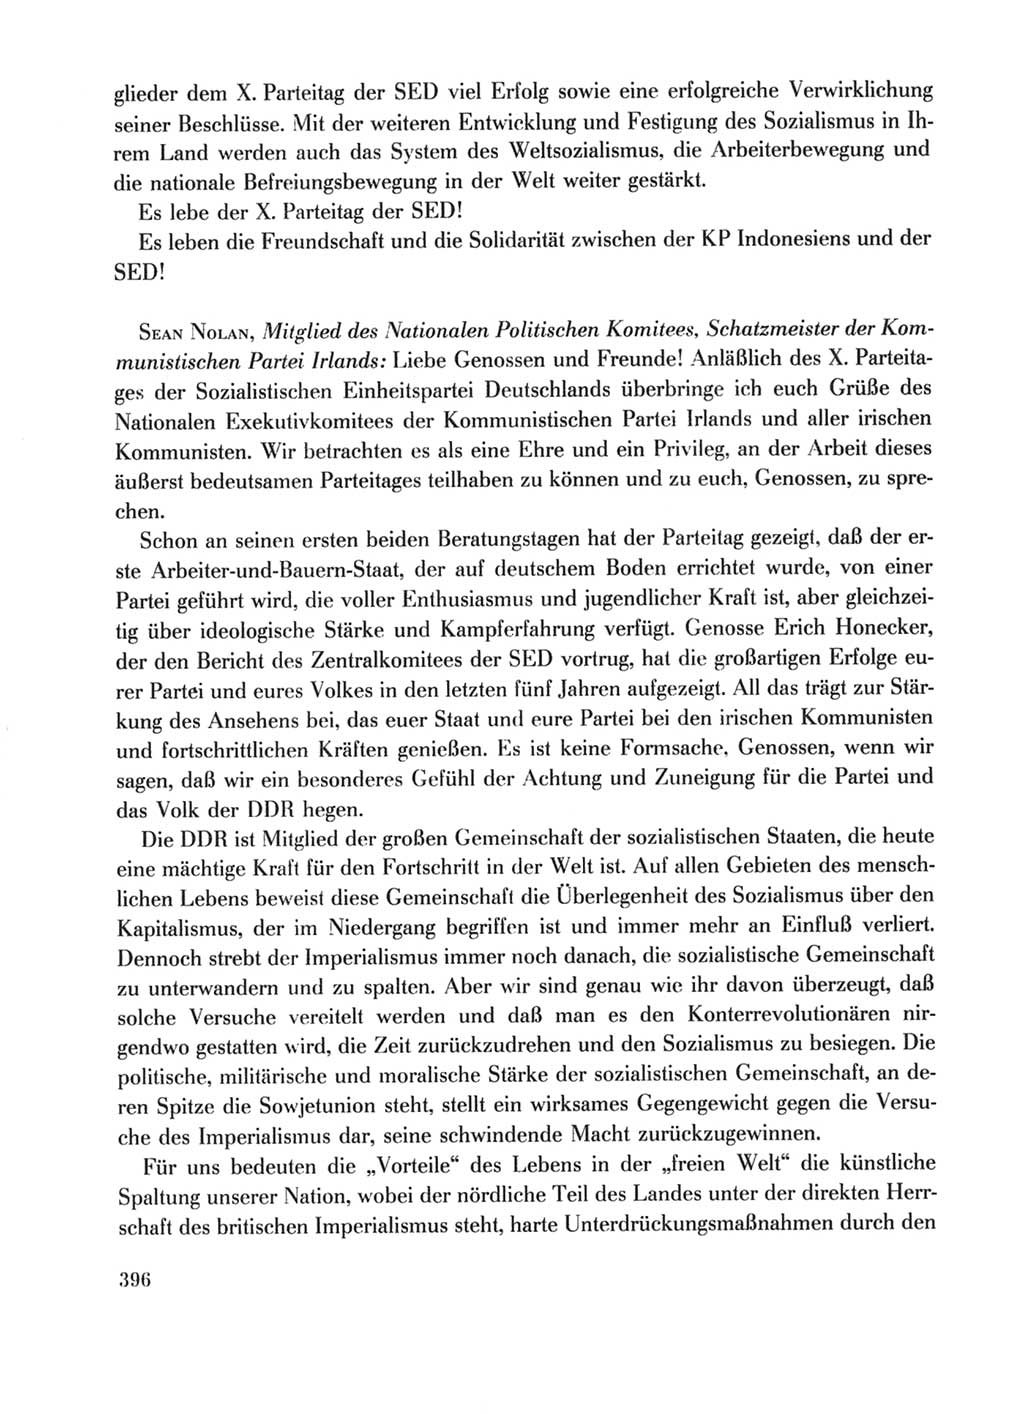 Protokoll der Verhandlungen des Ⅹ. Parteitages der Sozialistischen Einheitspartei Deutschlands (SED) [Deutsche Demokratische Republik (DDR)] 1981, Band 1, Seite 396 (Prot. Verh. Ⅹ. PT SED DDR 1981, Bd. 1, S. 396)